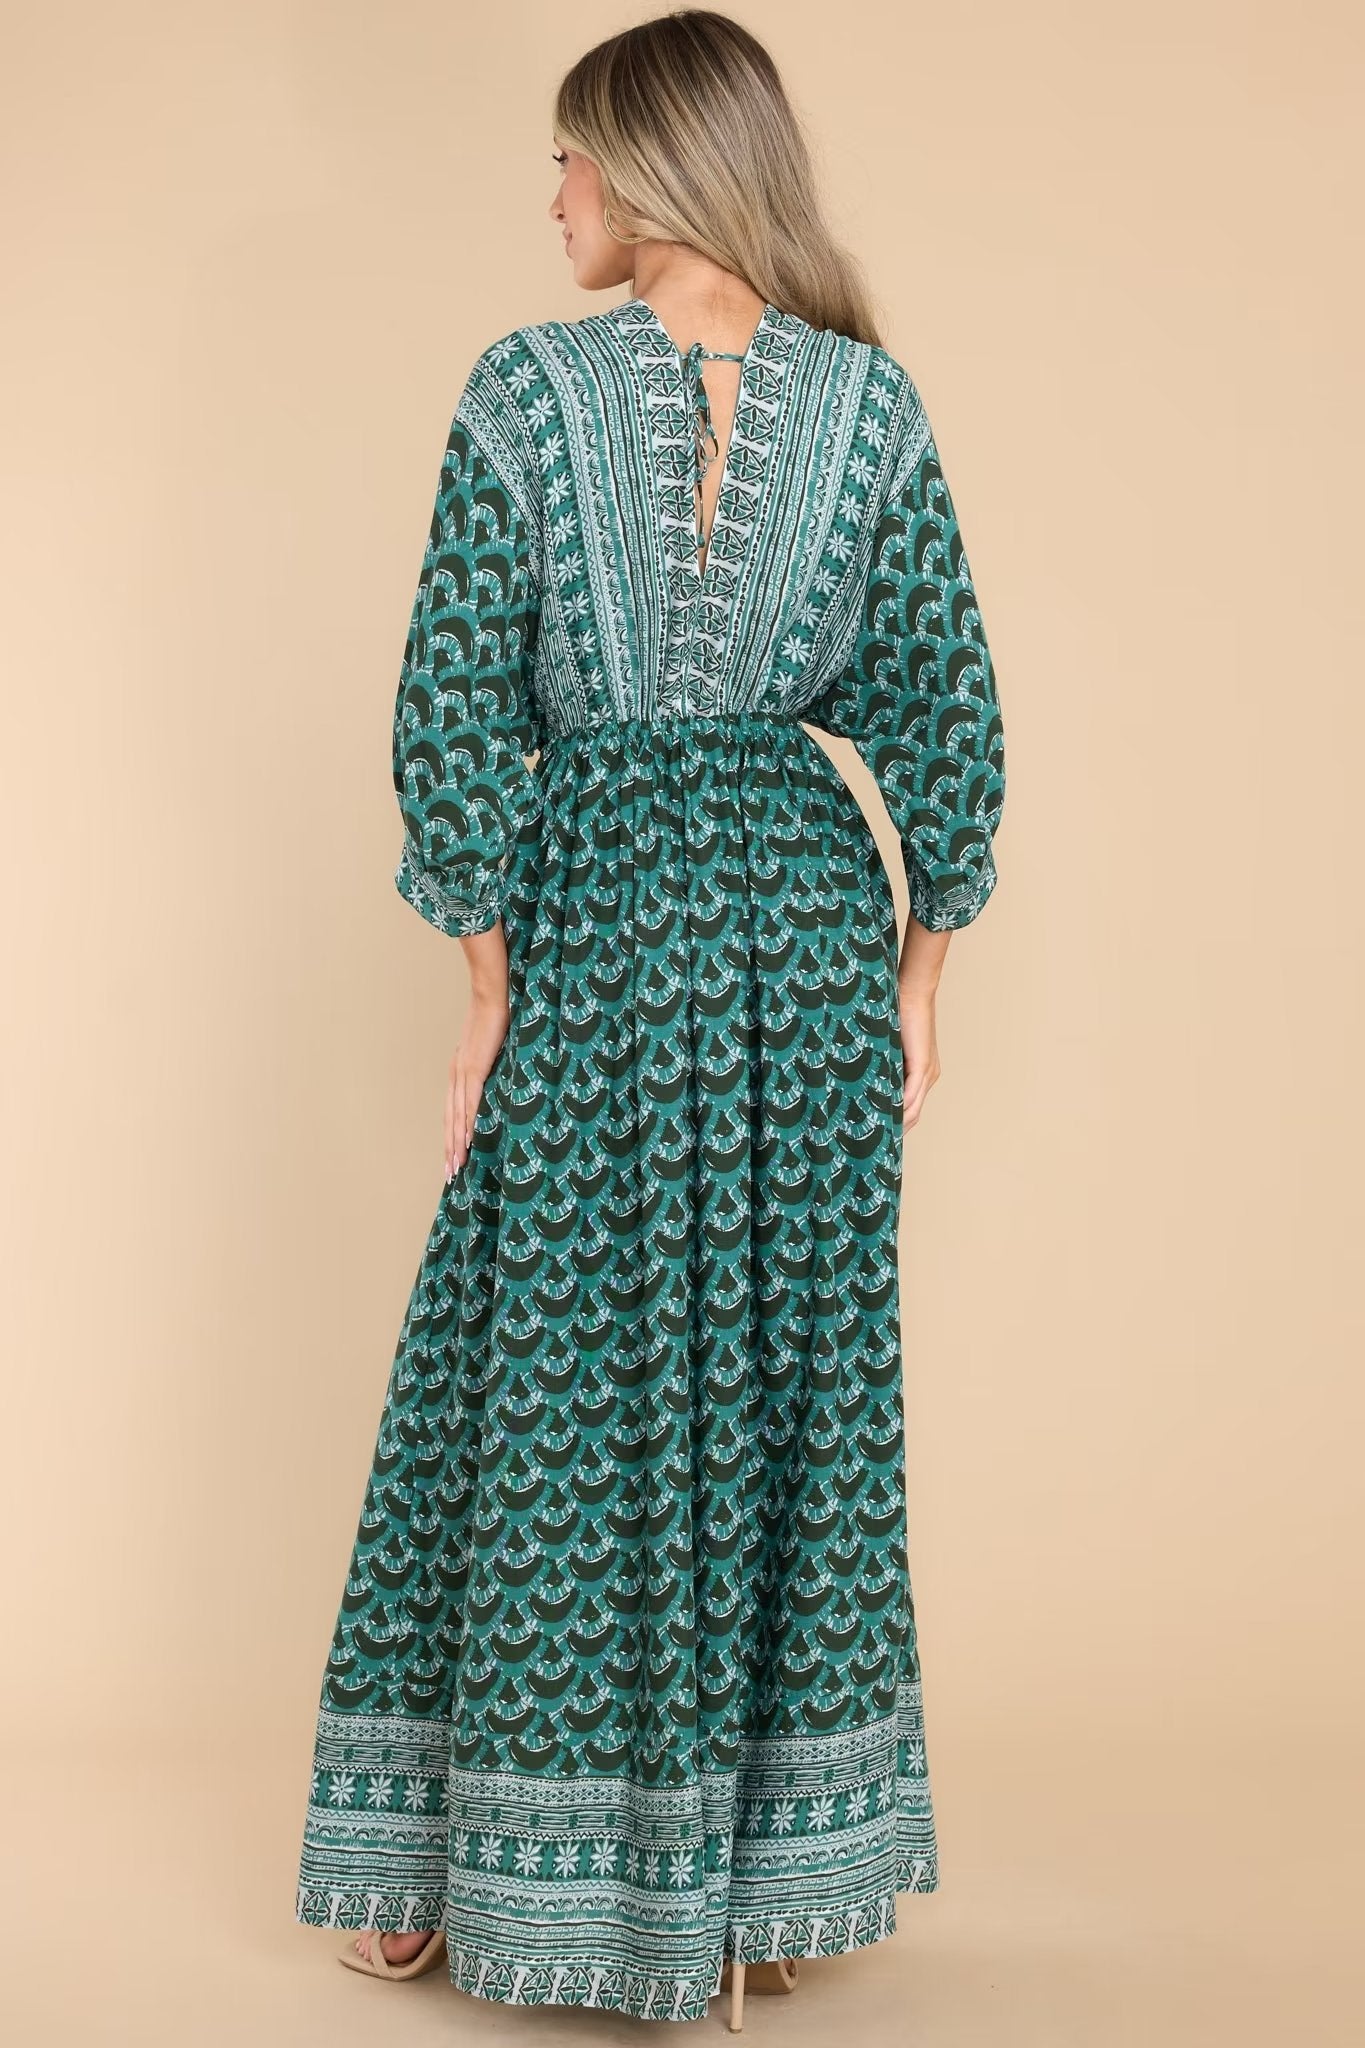 Vêtements de printemps pour femmes Robe imprimée élégante